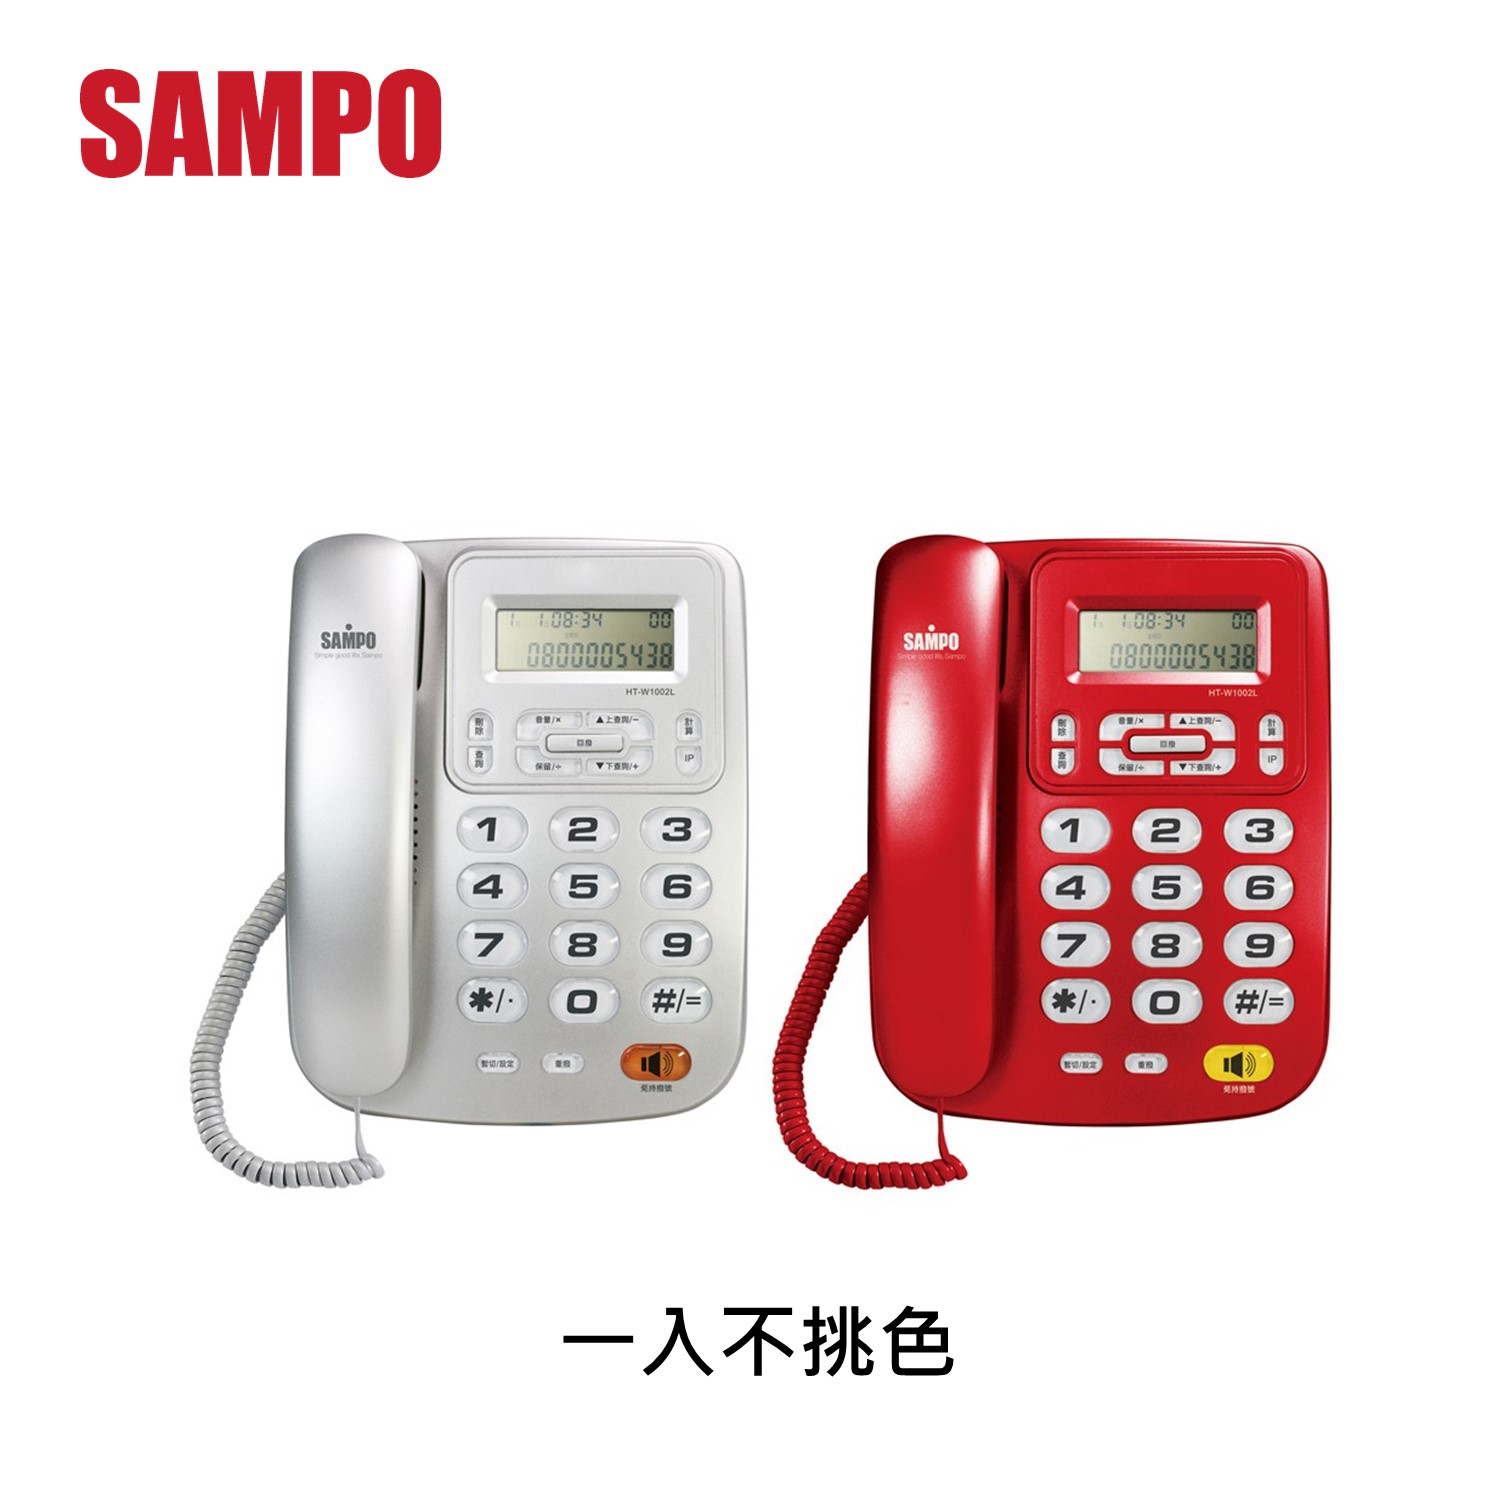 聲寶SAMPO 有線電話